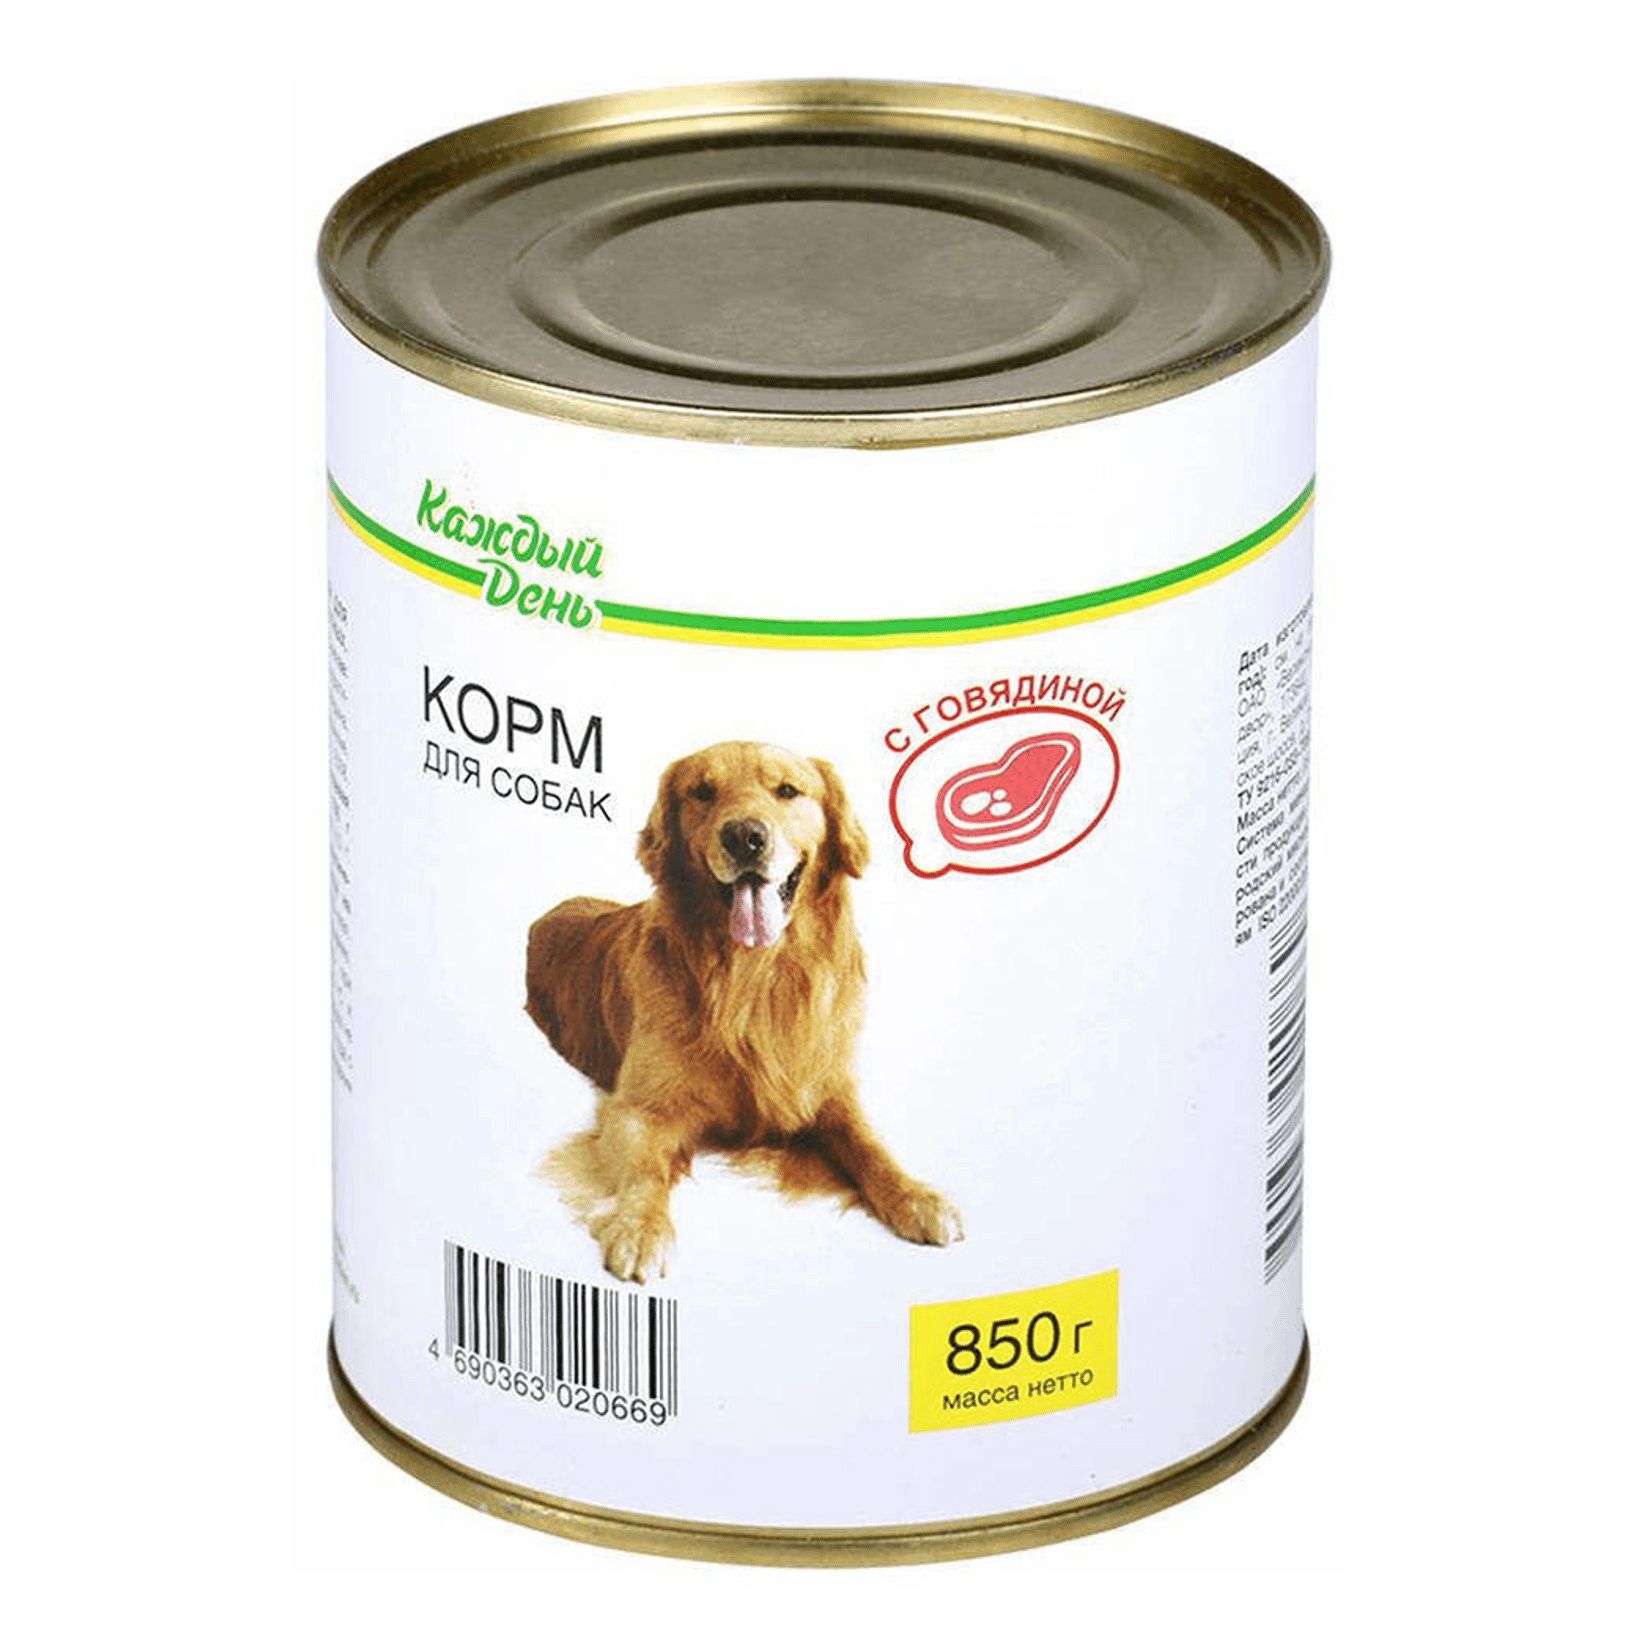 Корм для собак купить в новосибирске. Корм для собак каждый день консервы для собак с говядиной (0.85 кг) 1 шт.. Корм для собак darsi (0.85 кг) 1 шт. Консервы для собак: говядина и рис. Корм для собак Rocky (0.25 кг) 1 шт. Паштет с говядиной для щенков. Корм для собак Aras (0.82 кг) 1 шт. Premium select для собак - говядина с овощами и рисом.